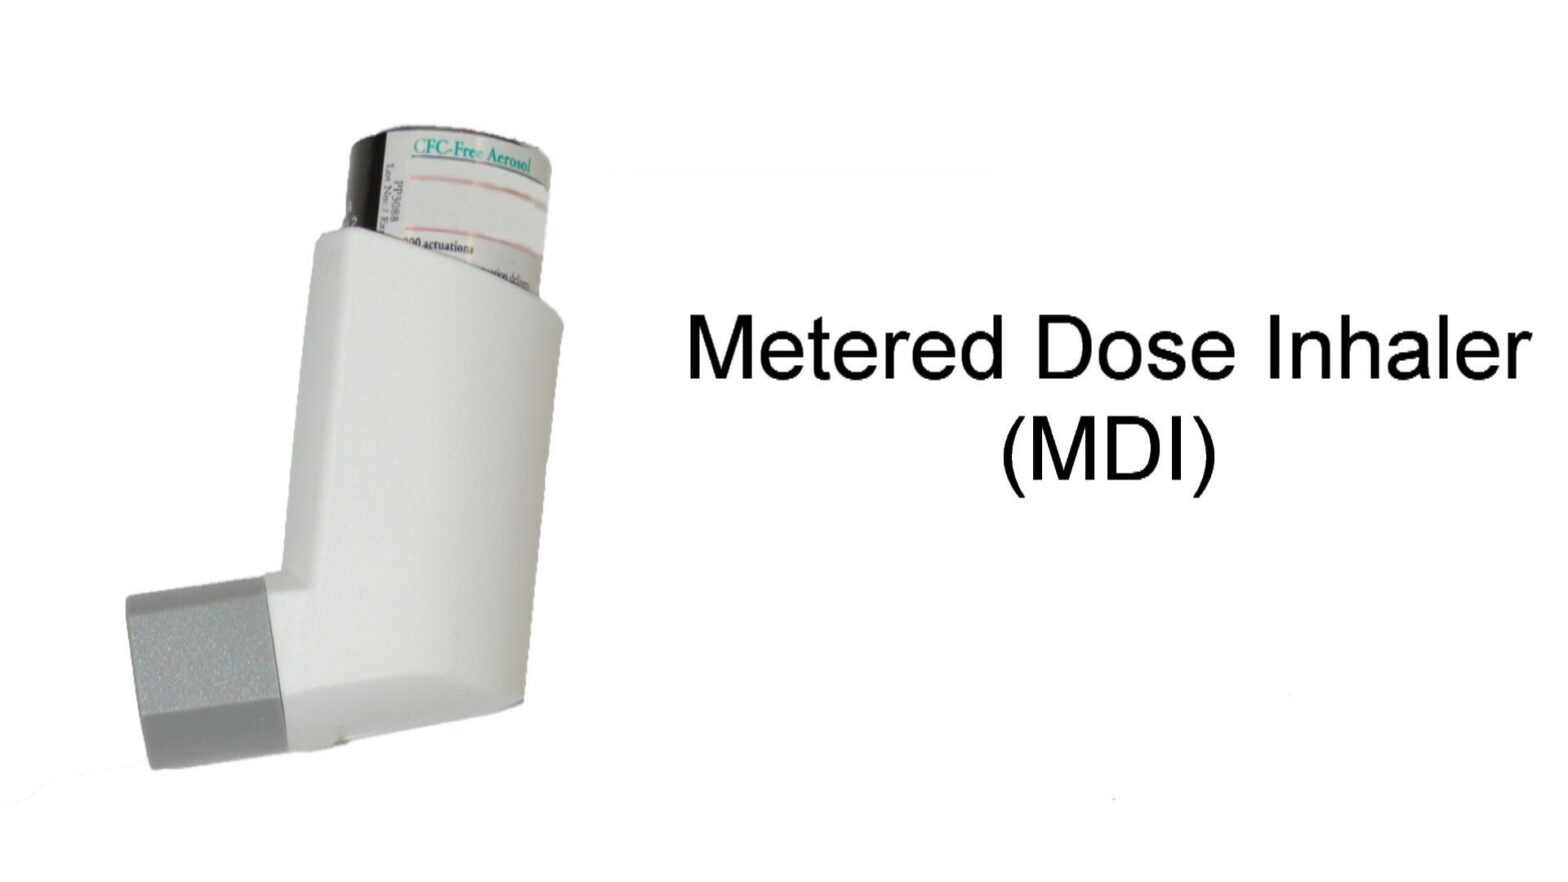 Global Metered Dose Inhalers Industry